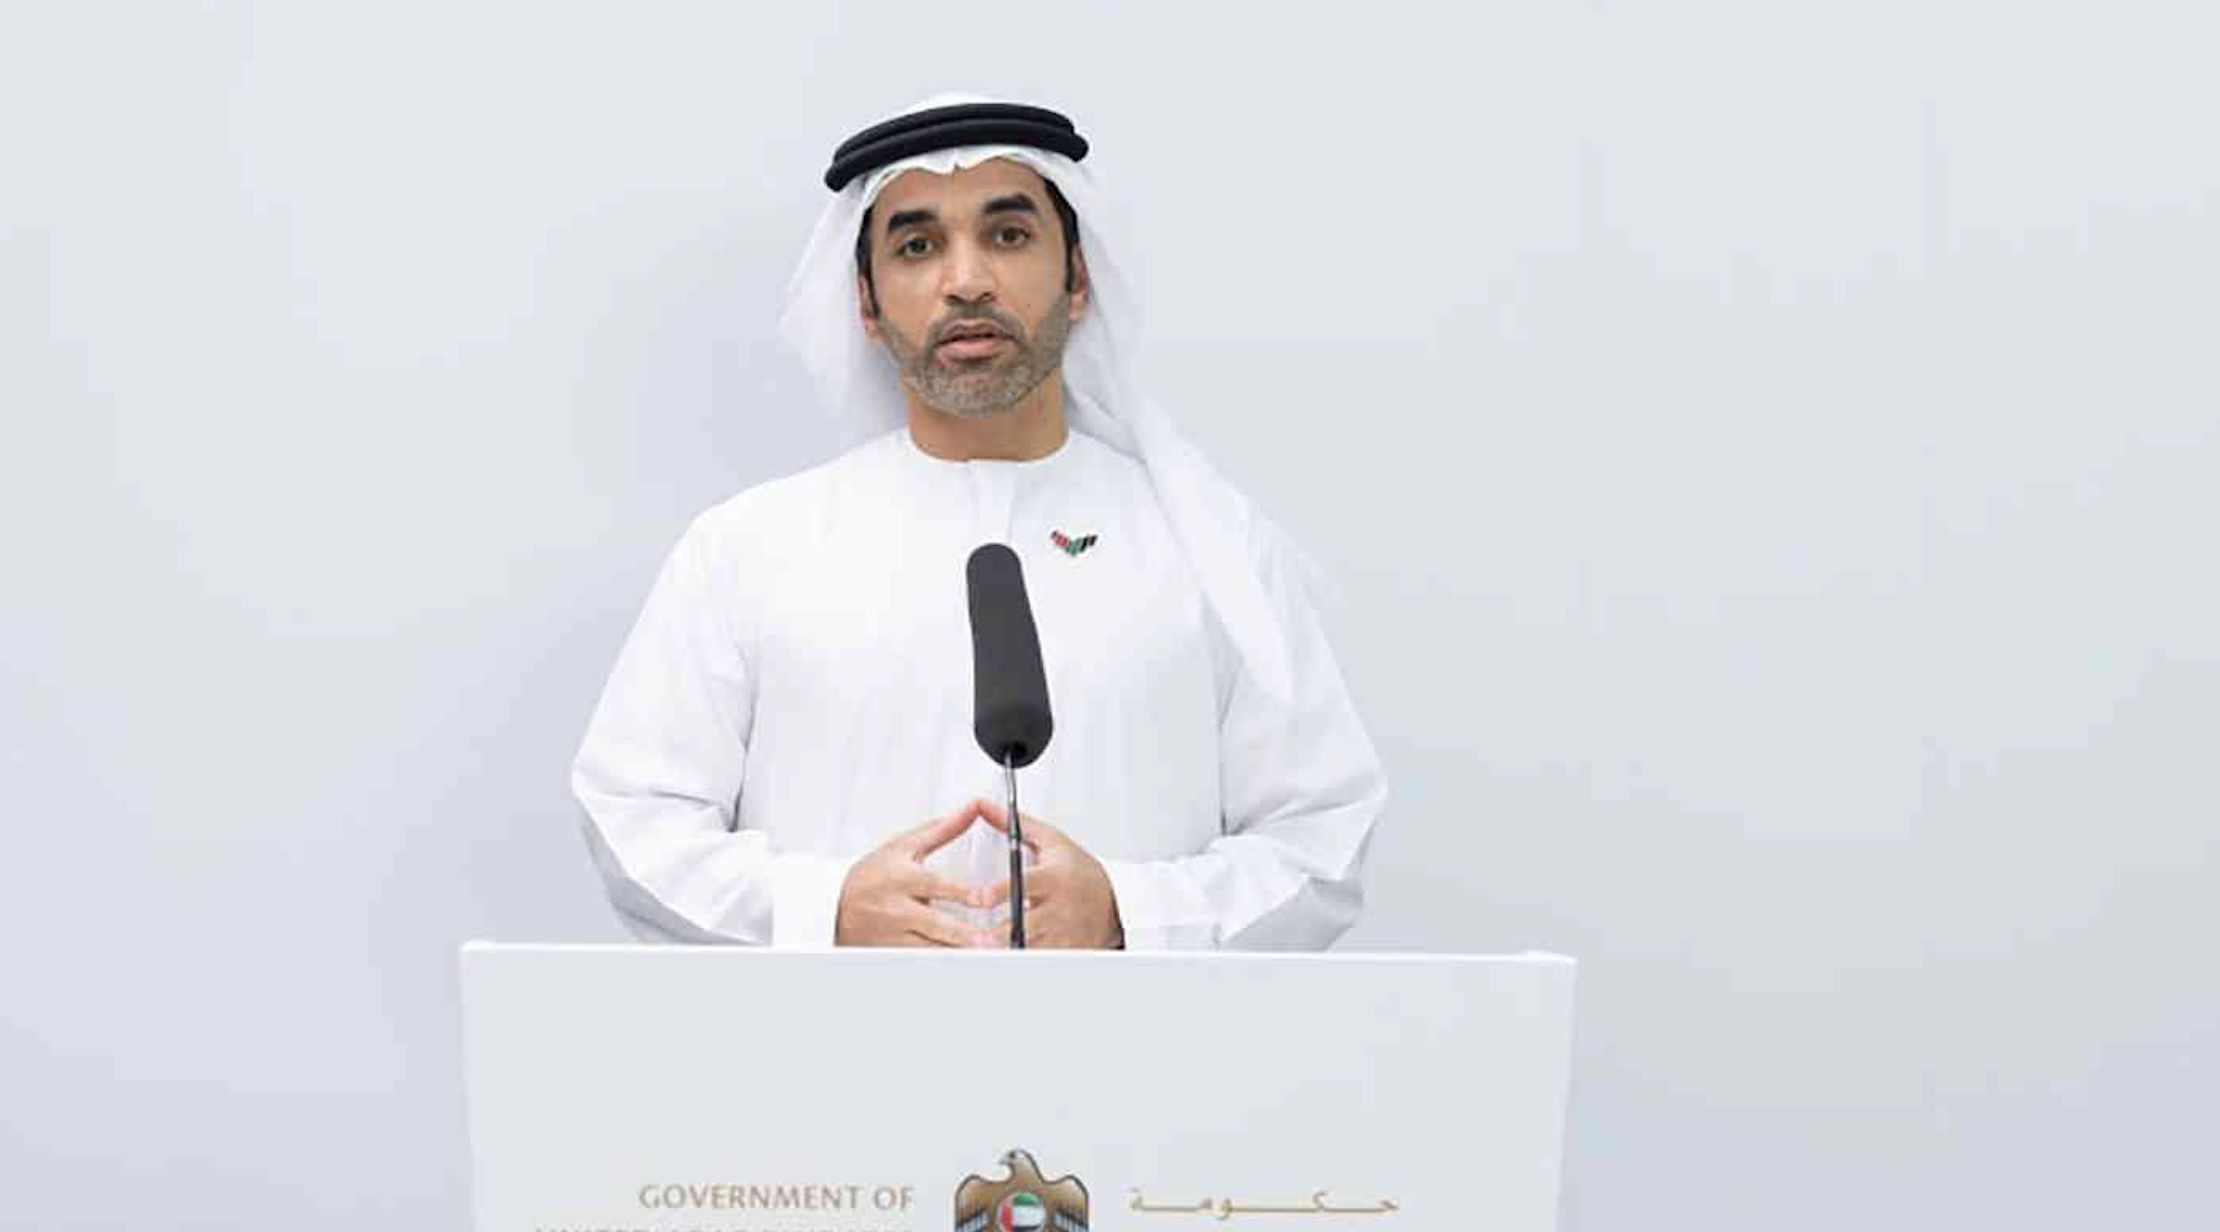 متحدہ عرب امارات کا کوویڈ19 سے مکمل طور پر چھٹکارا پانے کا منصوبہ